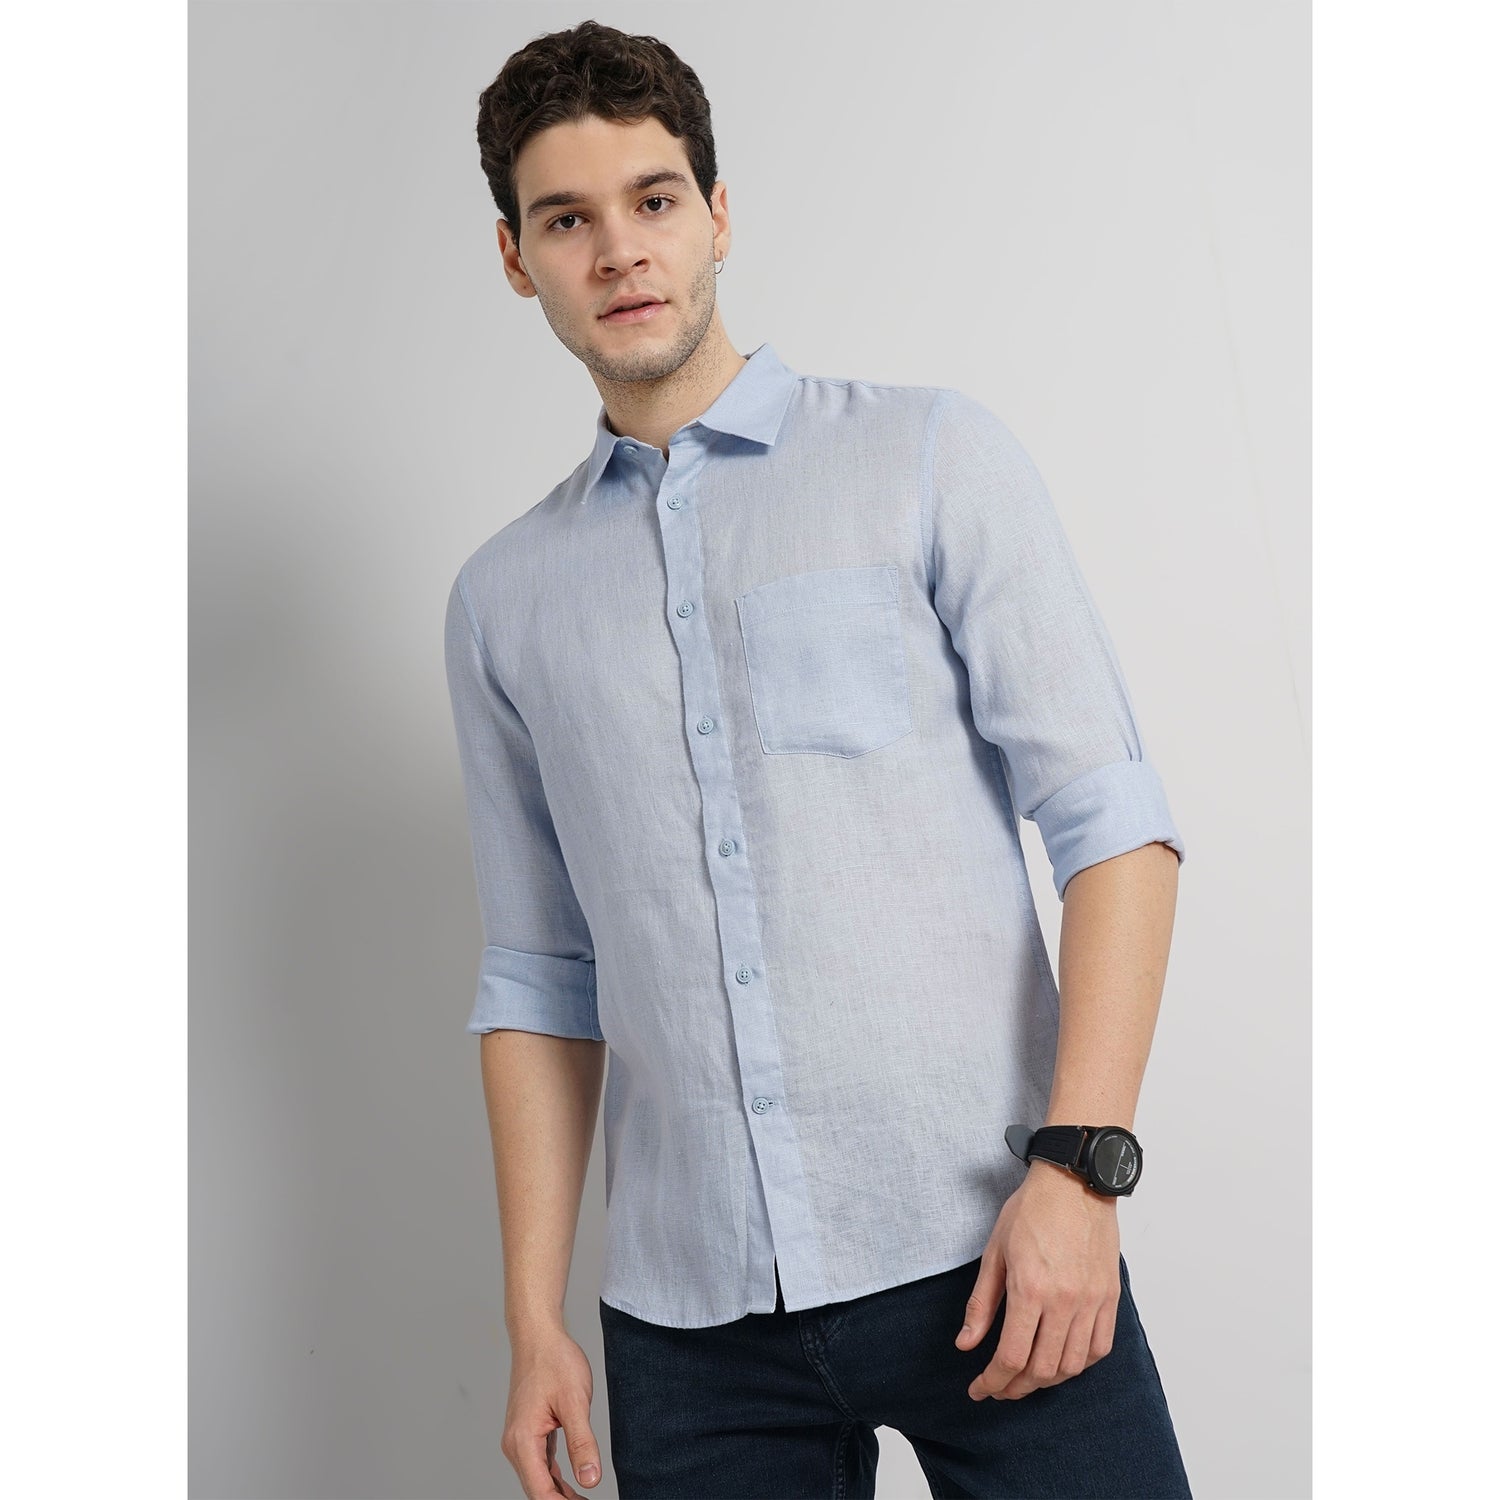 Men Blue Solid Regular Fit Linen Casual Shirt (GATALIN)